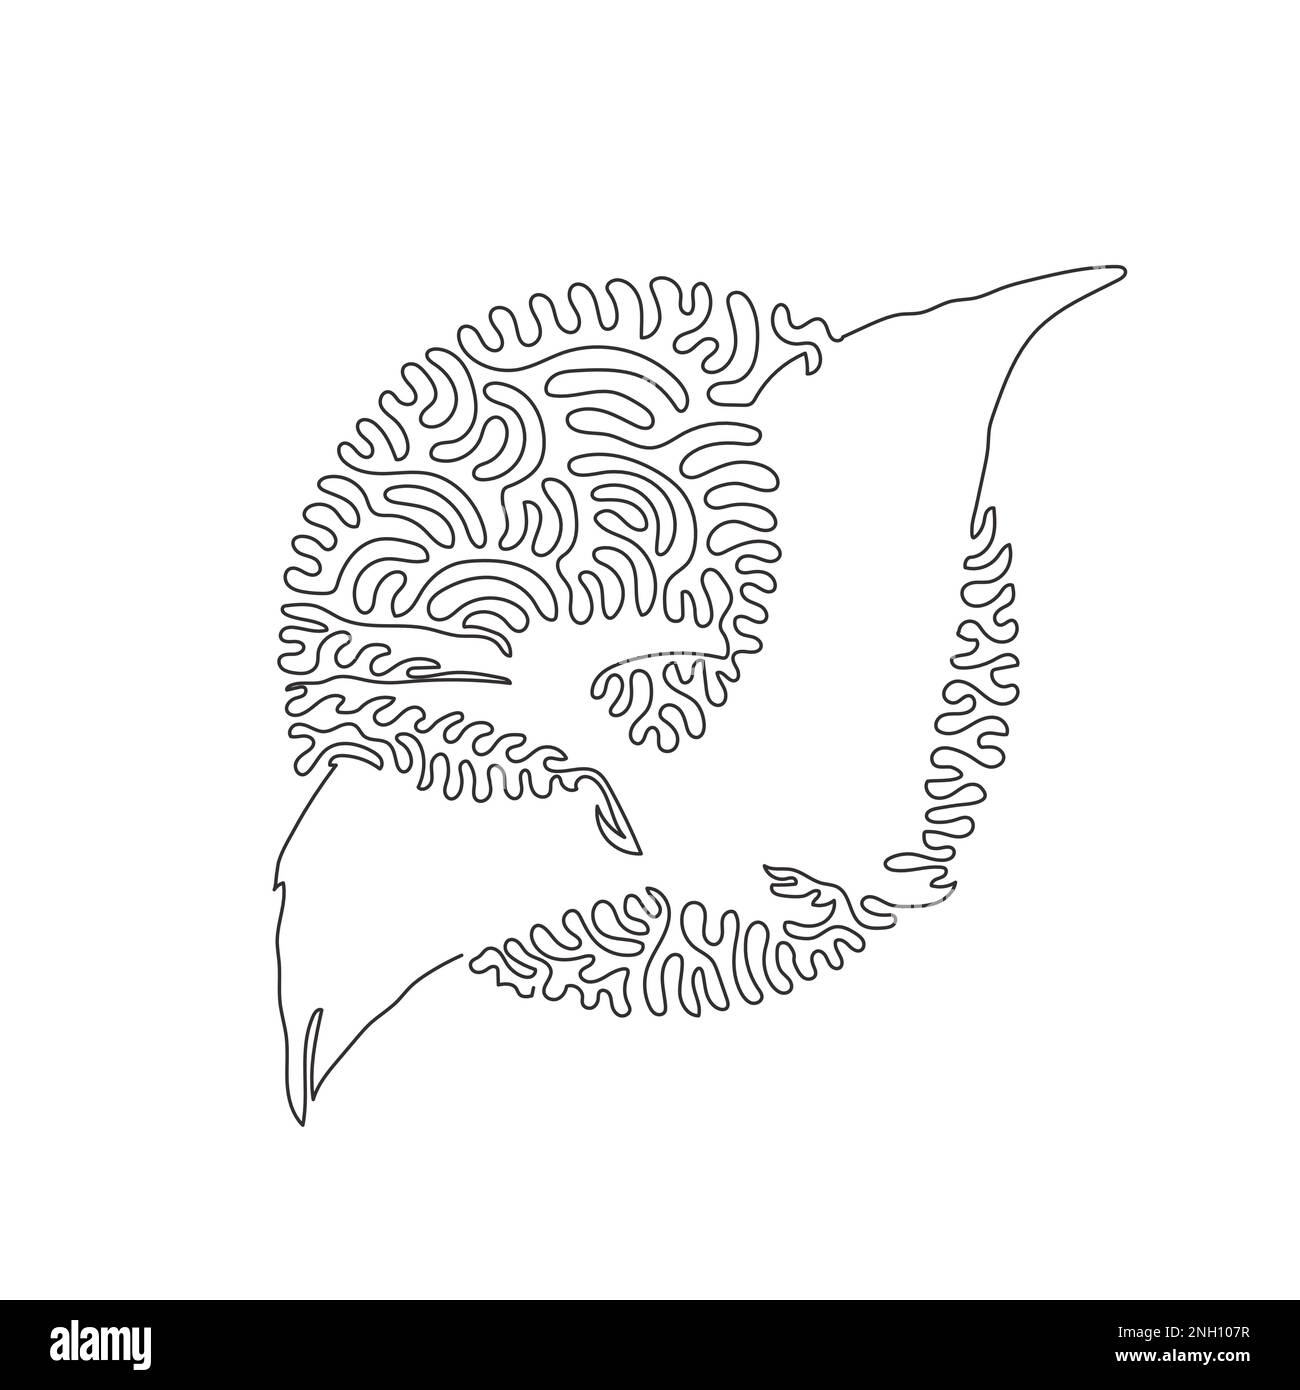 Einzelschwinge, durchgehende Linienzeichnung einer abstrakten Reptilienkunst mit Flügeln. Durchgehende Linienzeichnung von Konstruktionsvektoren zur Darstellung breiter geflügelter Pterosaurier Stock Vektor